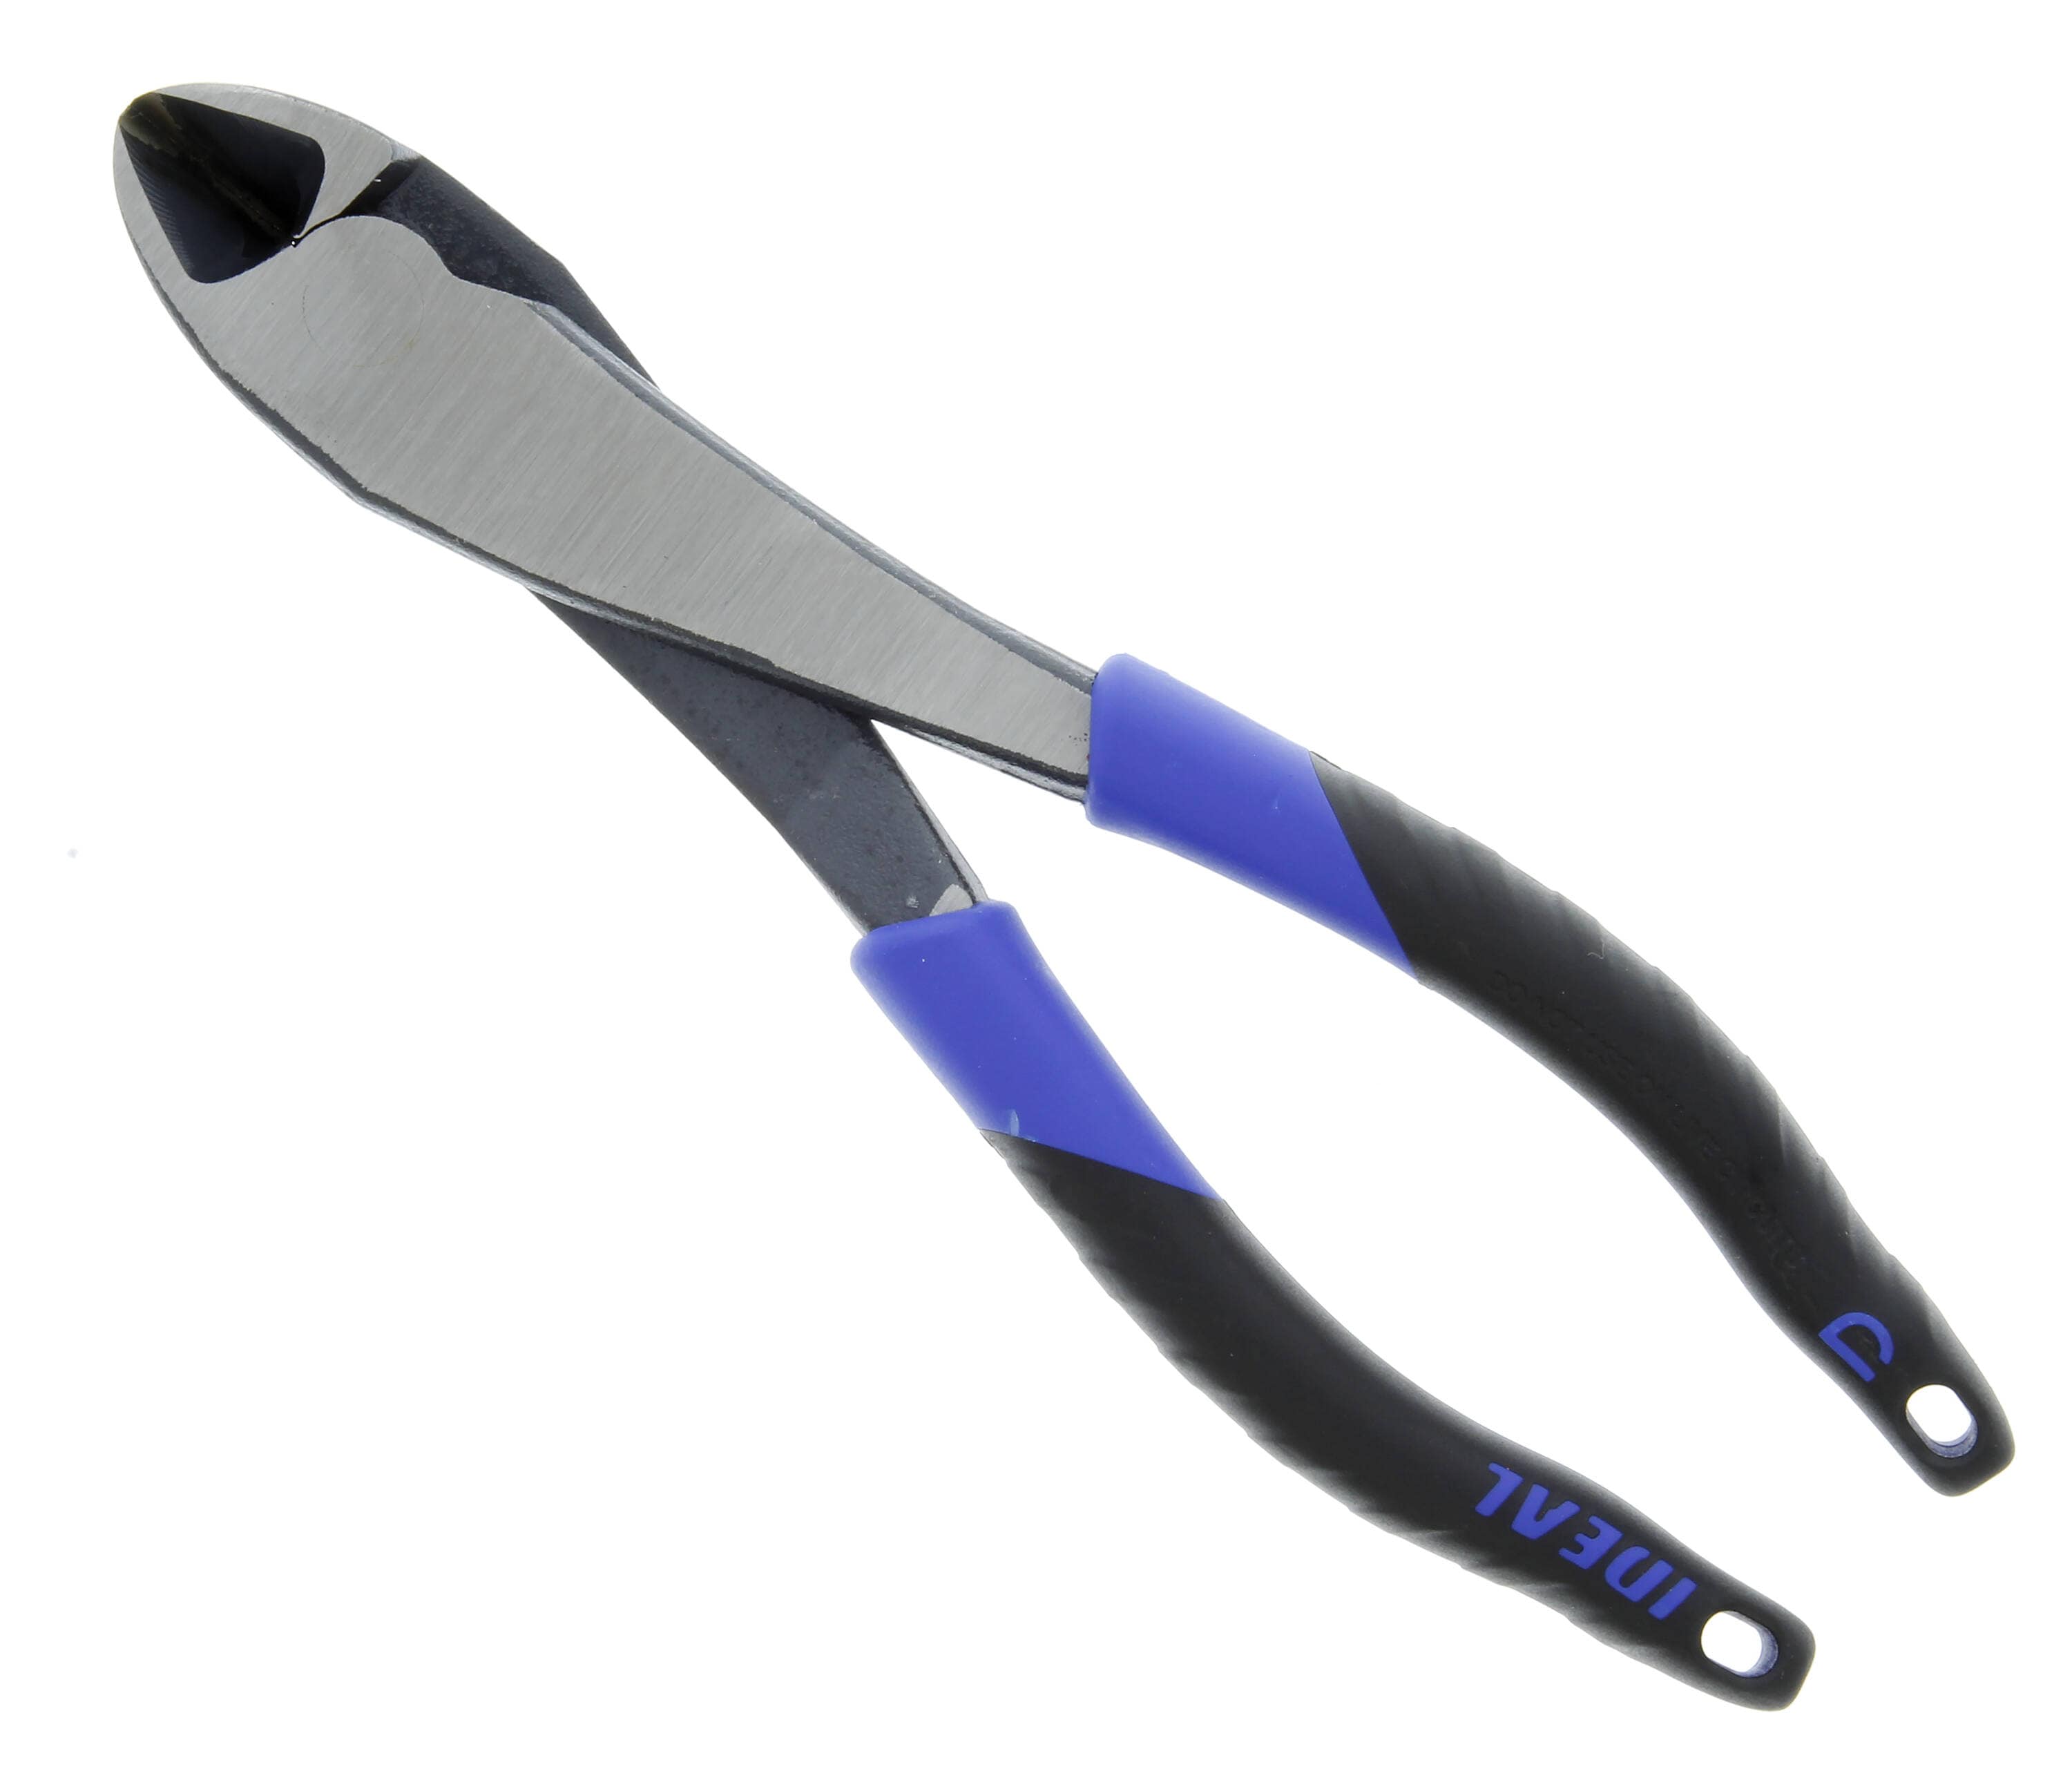 Hair Extension Pliers Kit Tan Color Pliers Tool Opener Plier Hair